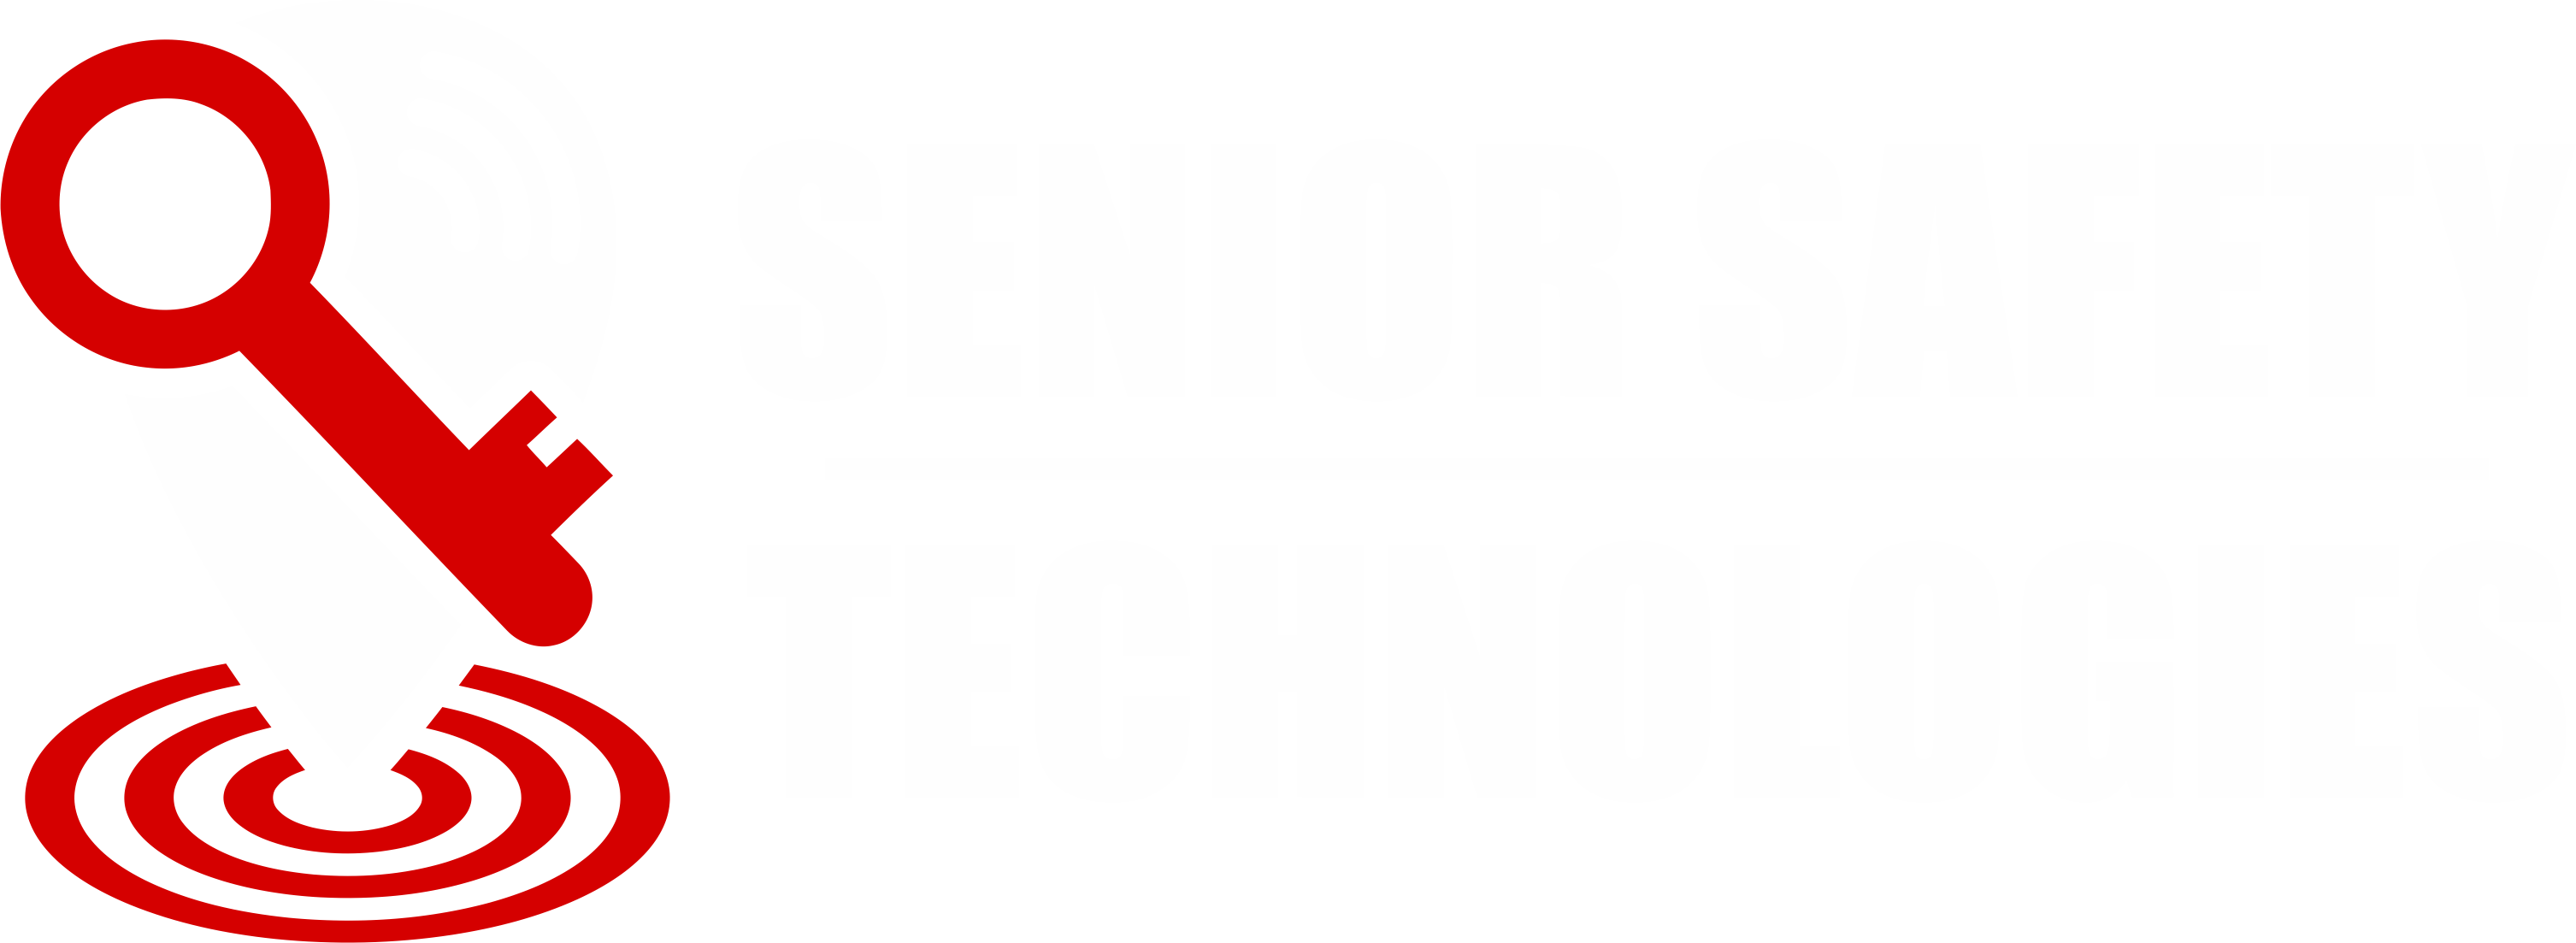 Senior Safety Tech